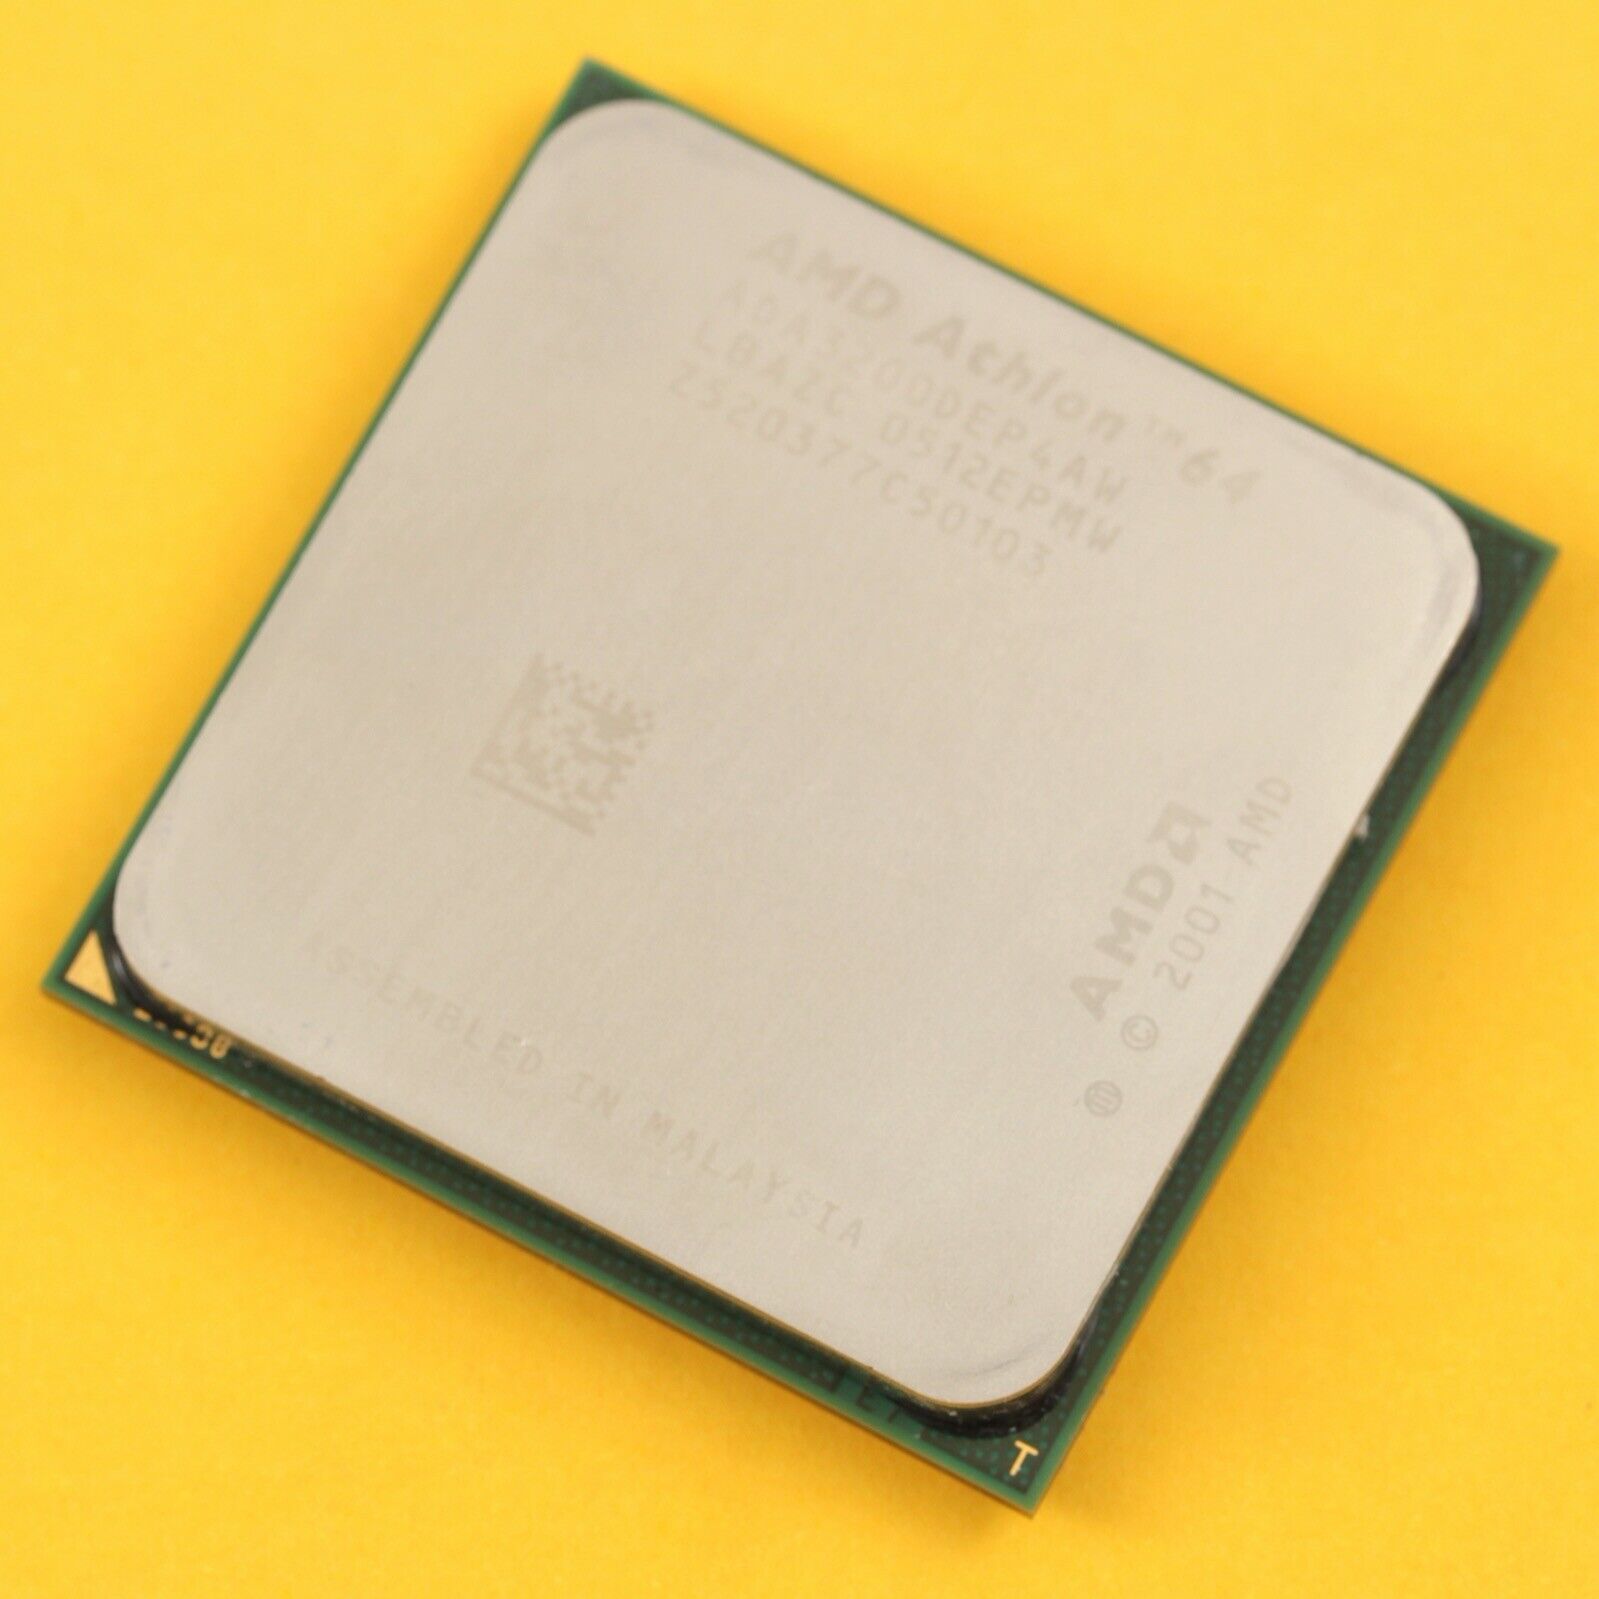 AMD Athlon 64 3200+ 2Ghz 512KB Socket 939 CPU Processor ADA3200DEP4AW